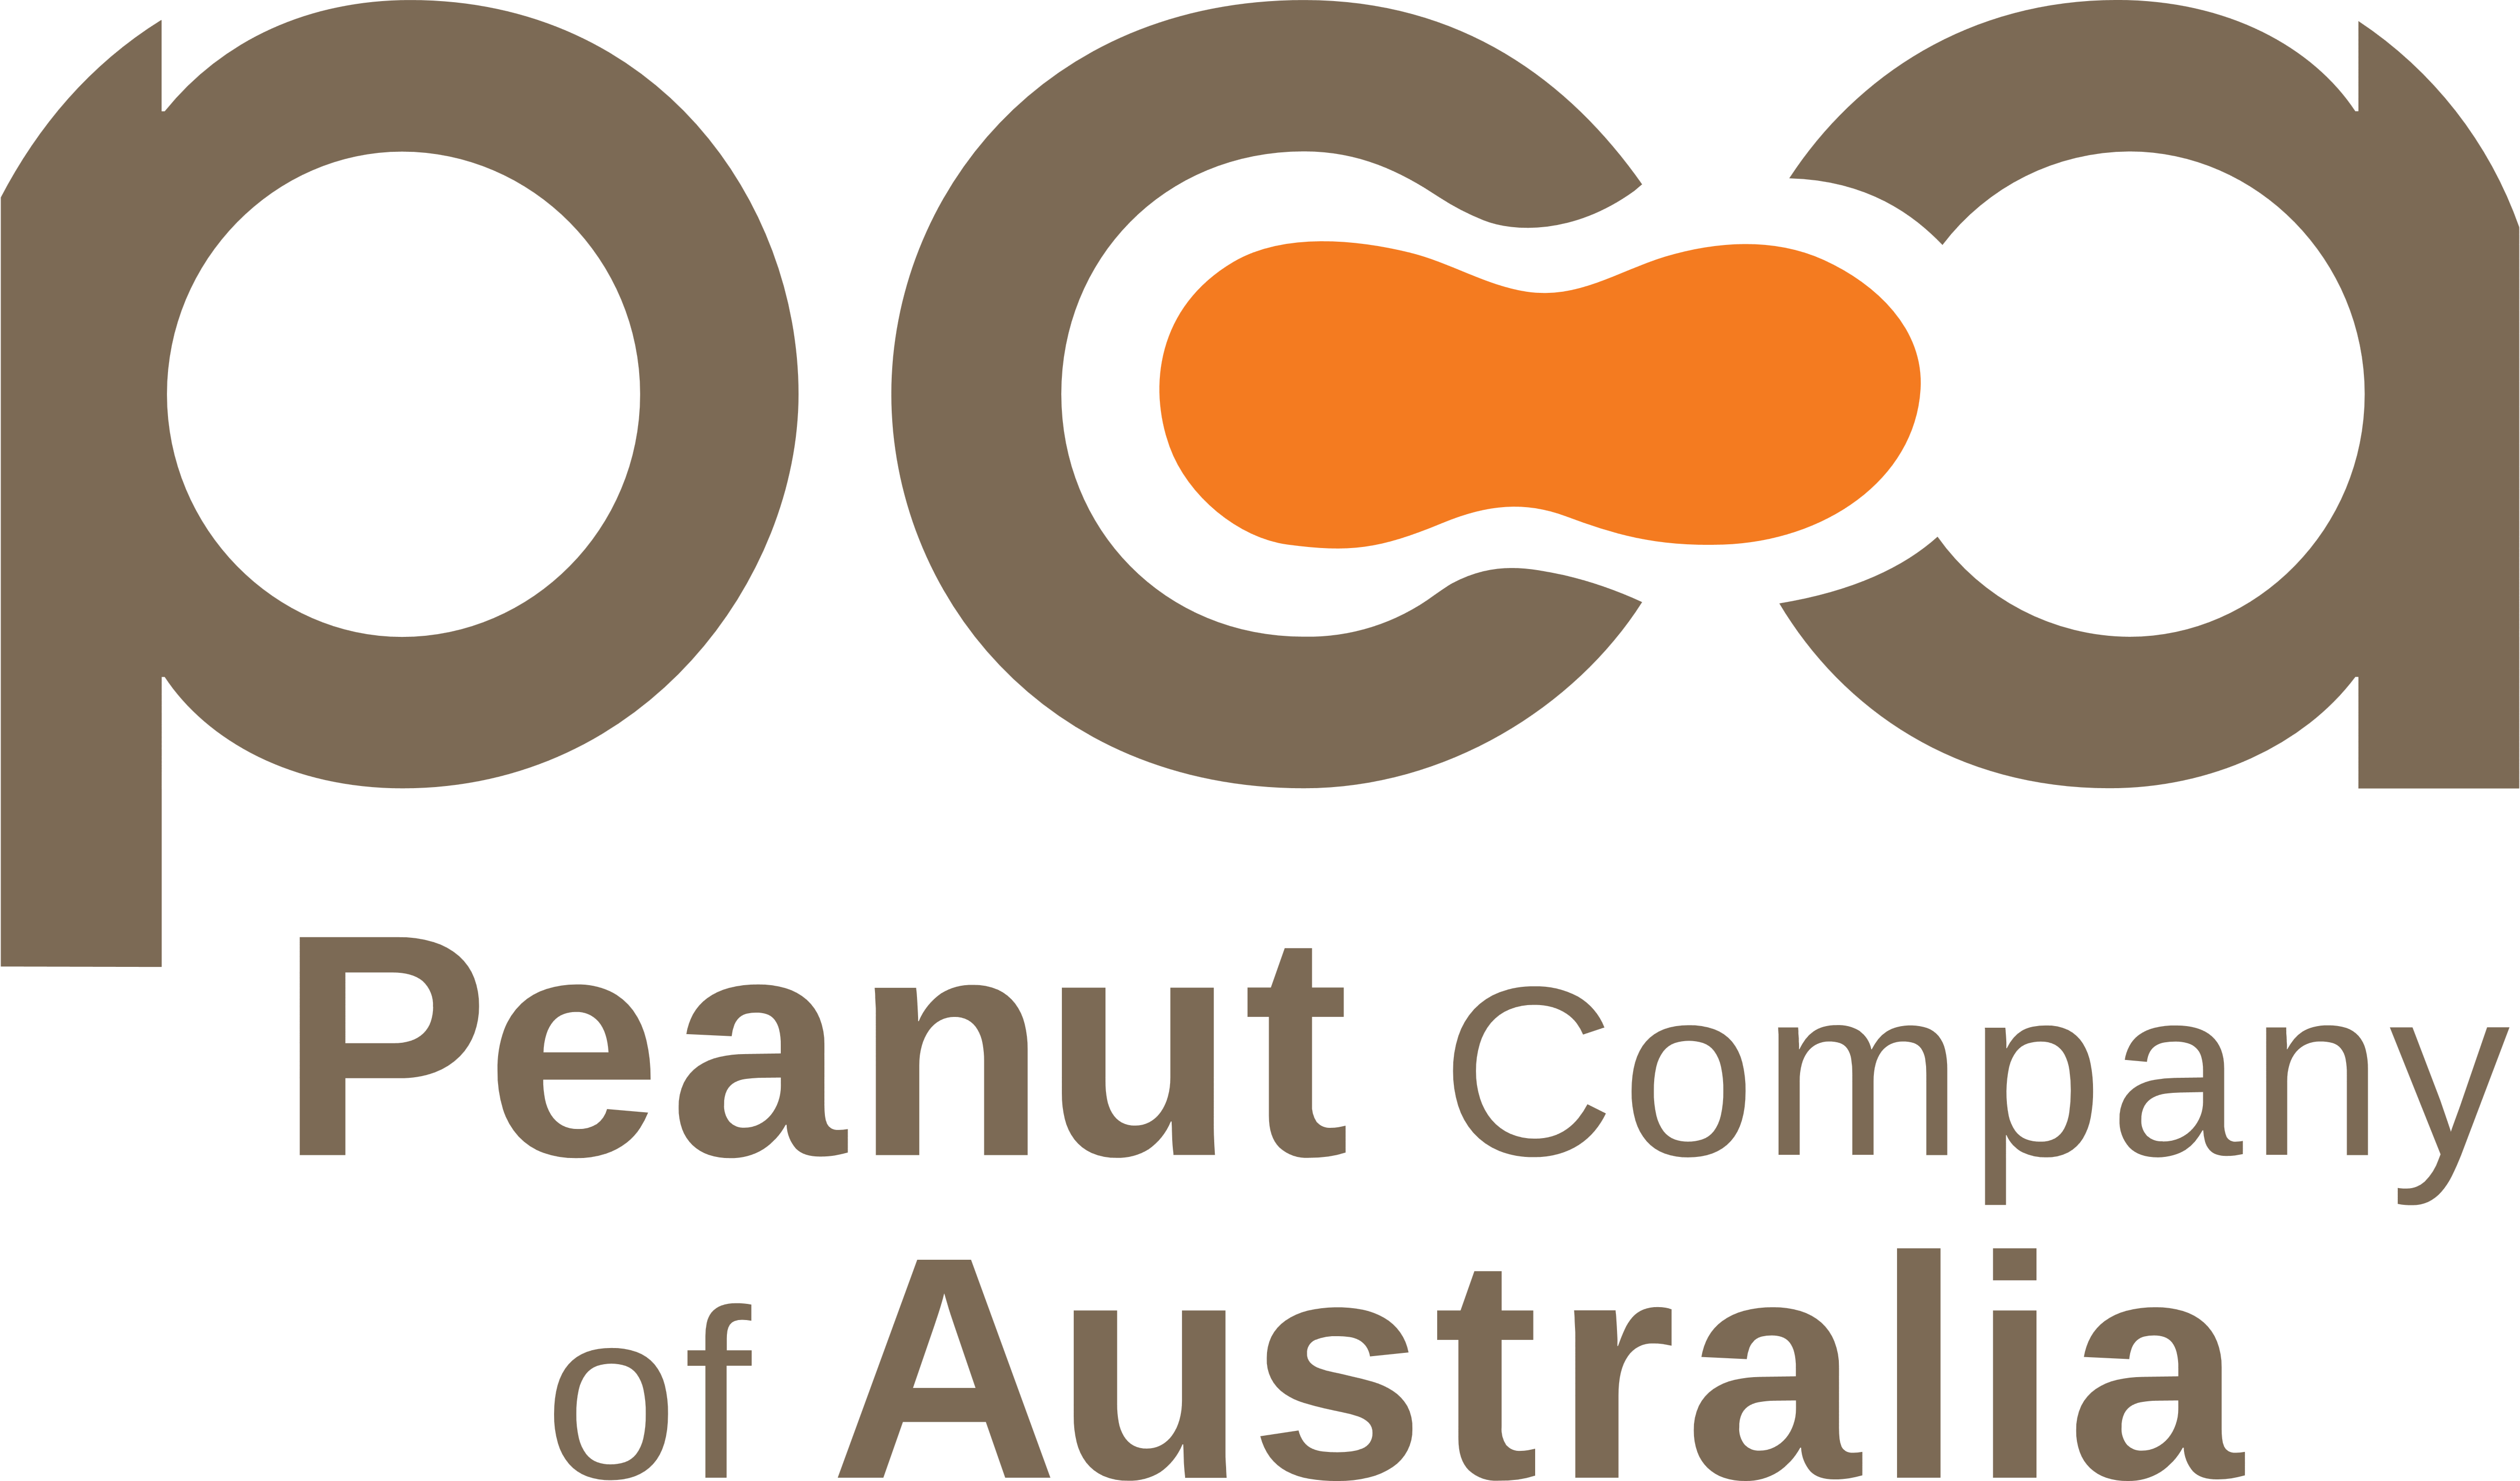 Australian Truck Company Logos